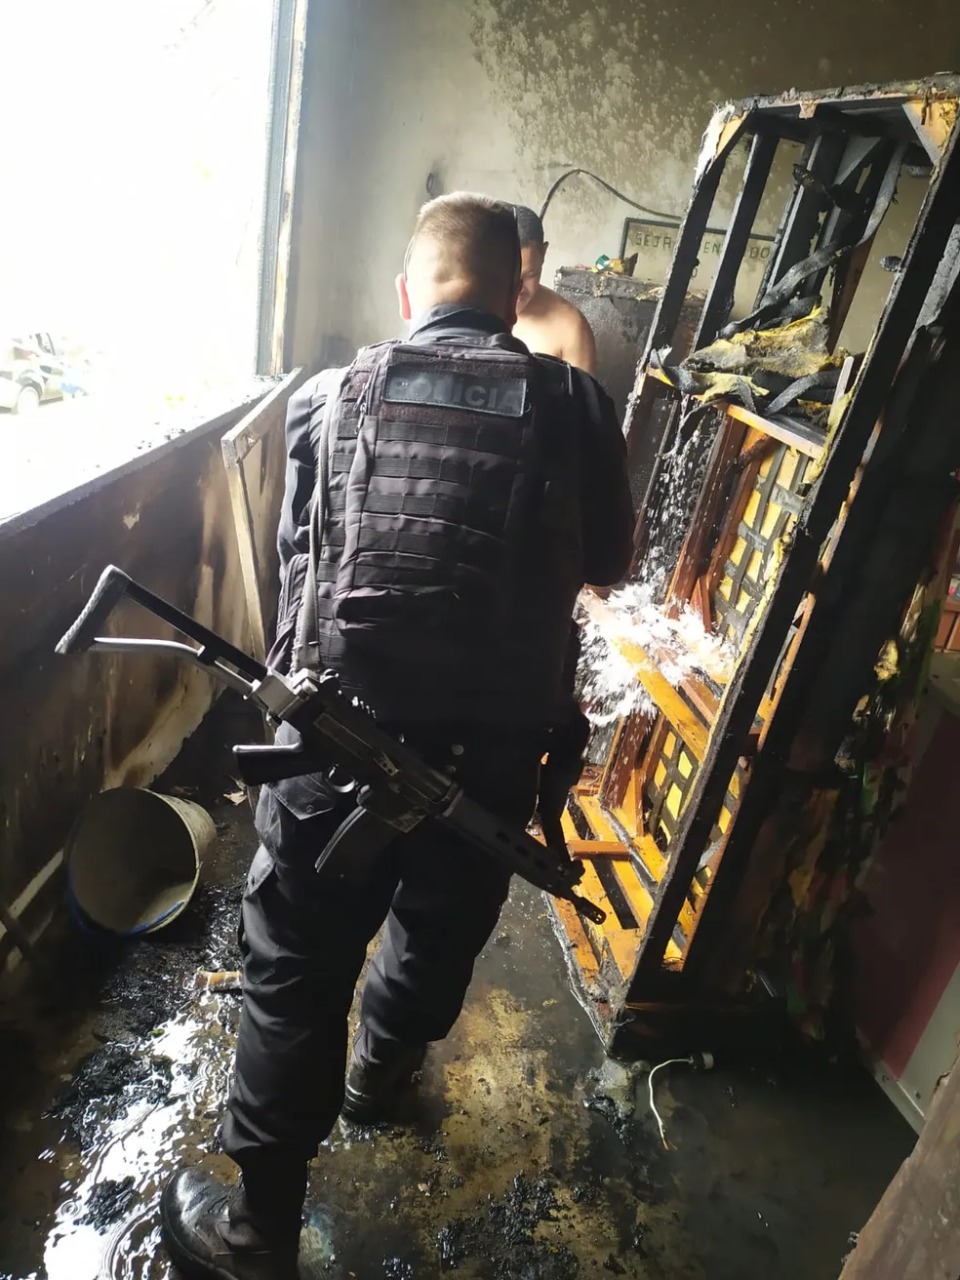 Policiais apagam incêndio em casa em Arraial do Cabo usando baldes com água